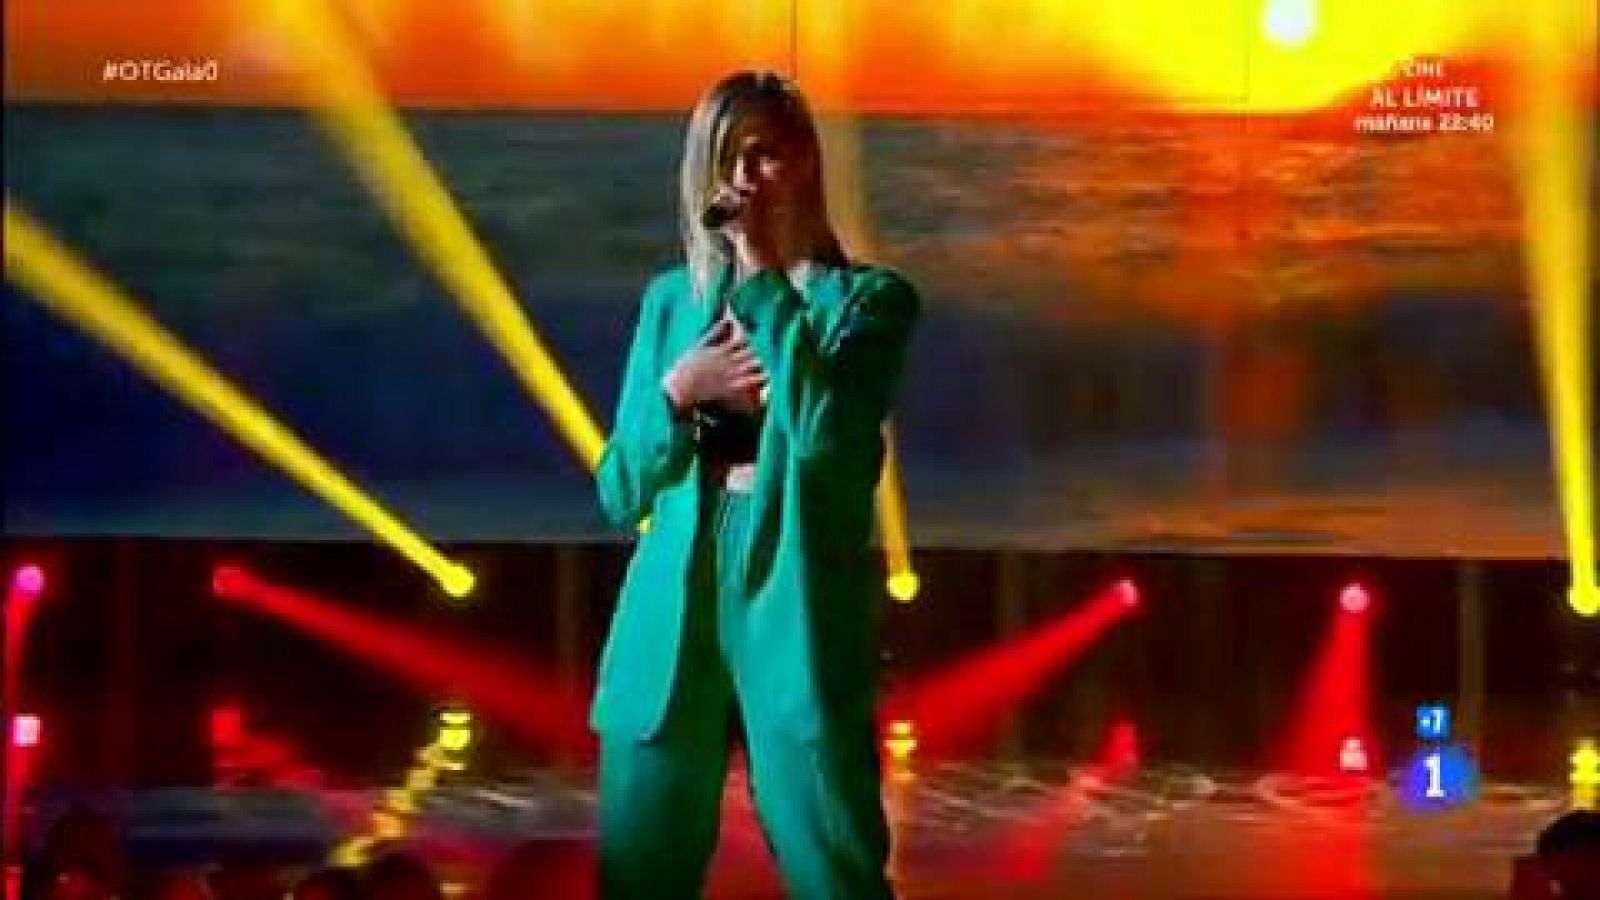 Samantha canta "Que tinguem sort" en la Gala 0 de OT 2020